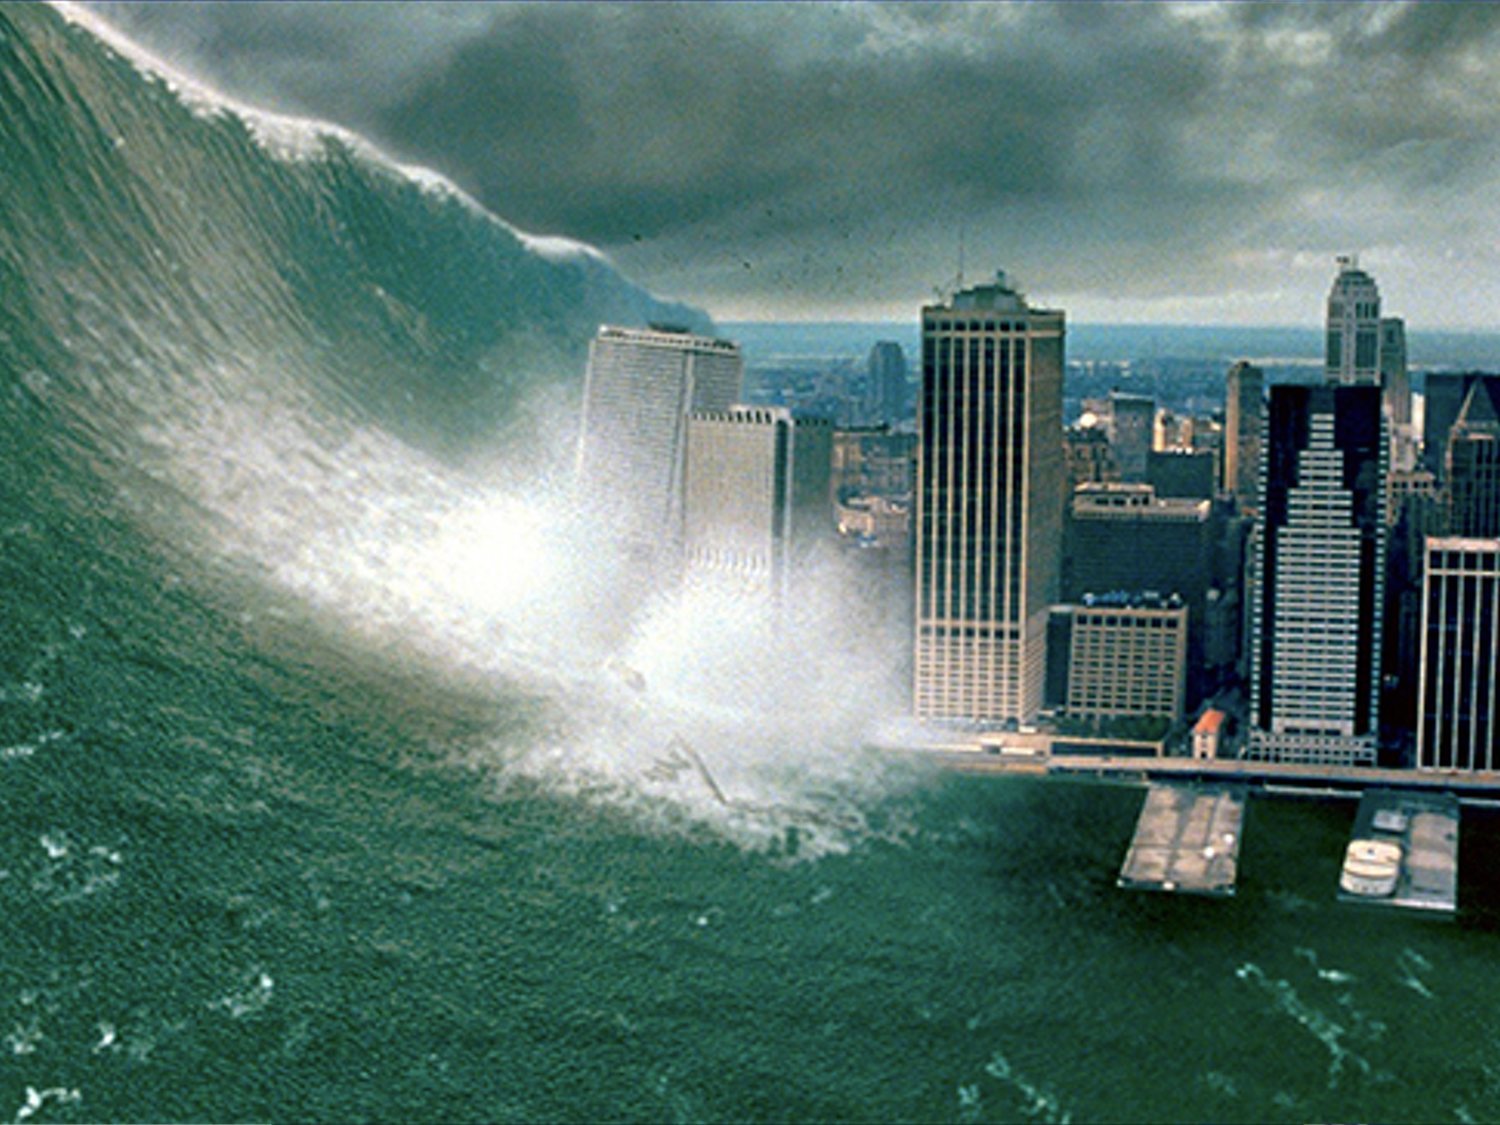 9 desastres naturales que quedaron reflejados en el cine